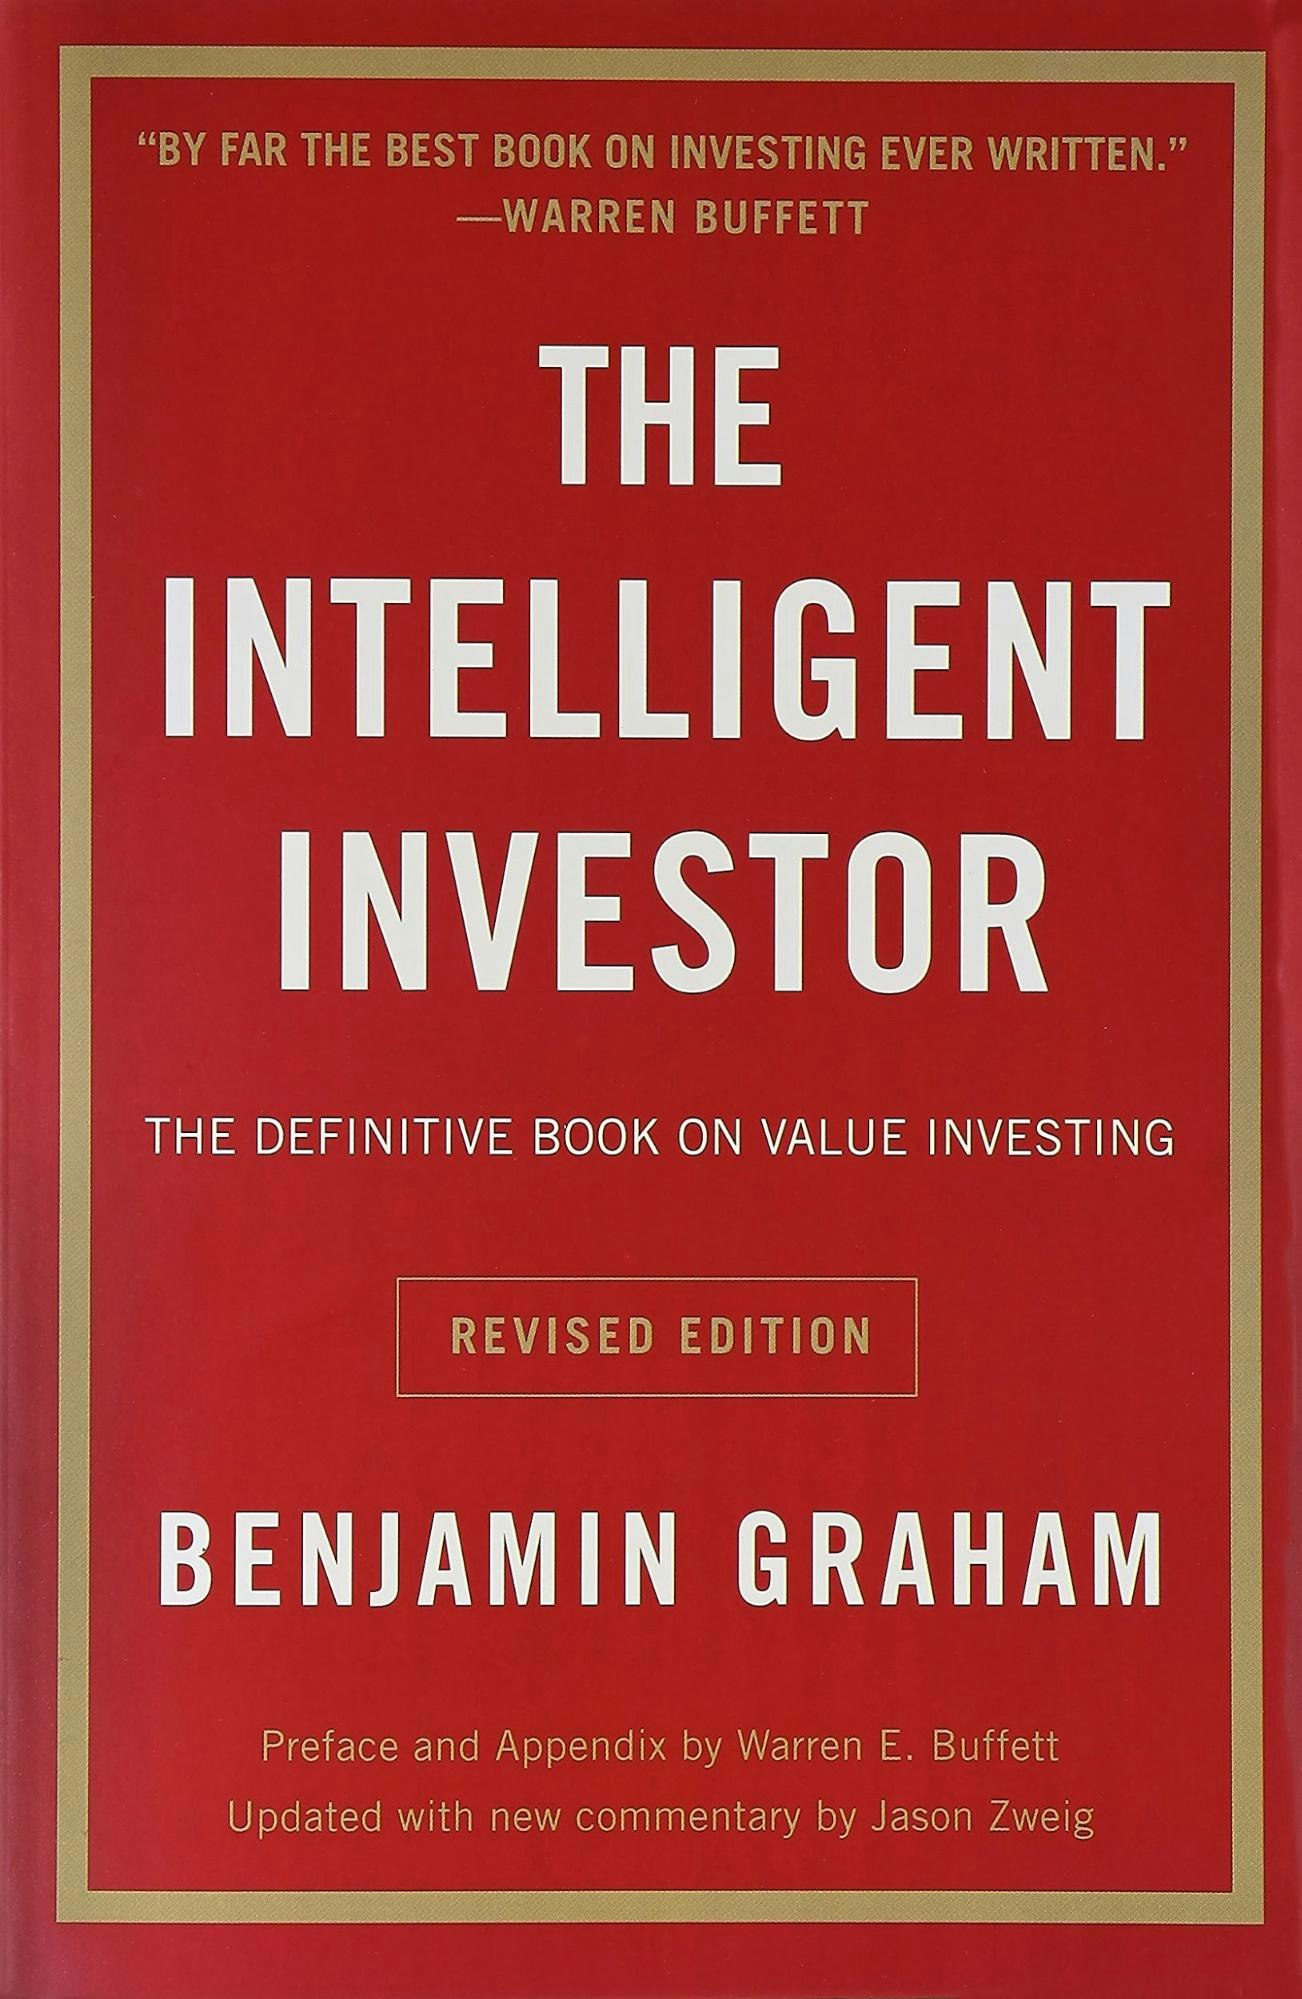 聪明的投资者——本杰明·格雷厄姆